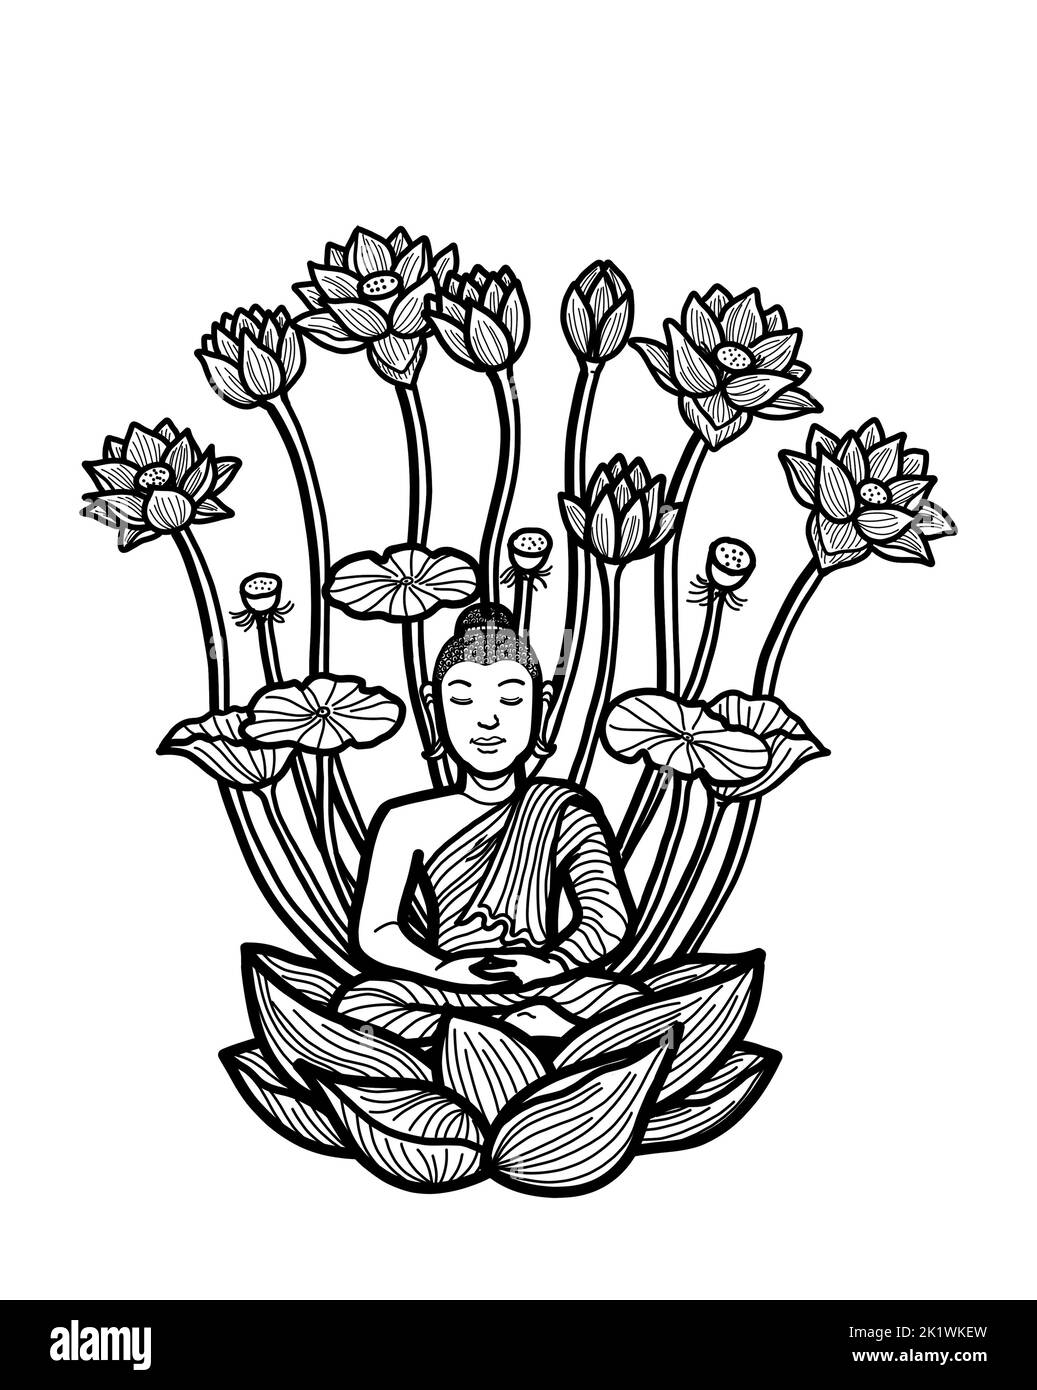 Gautama Buddha seduto in loto posa meditare. Pratica di meditazione buddista per l'illuminazione, la consapevolezza, la pace, l'armonia e la spiritualità. Foto Stock